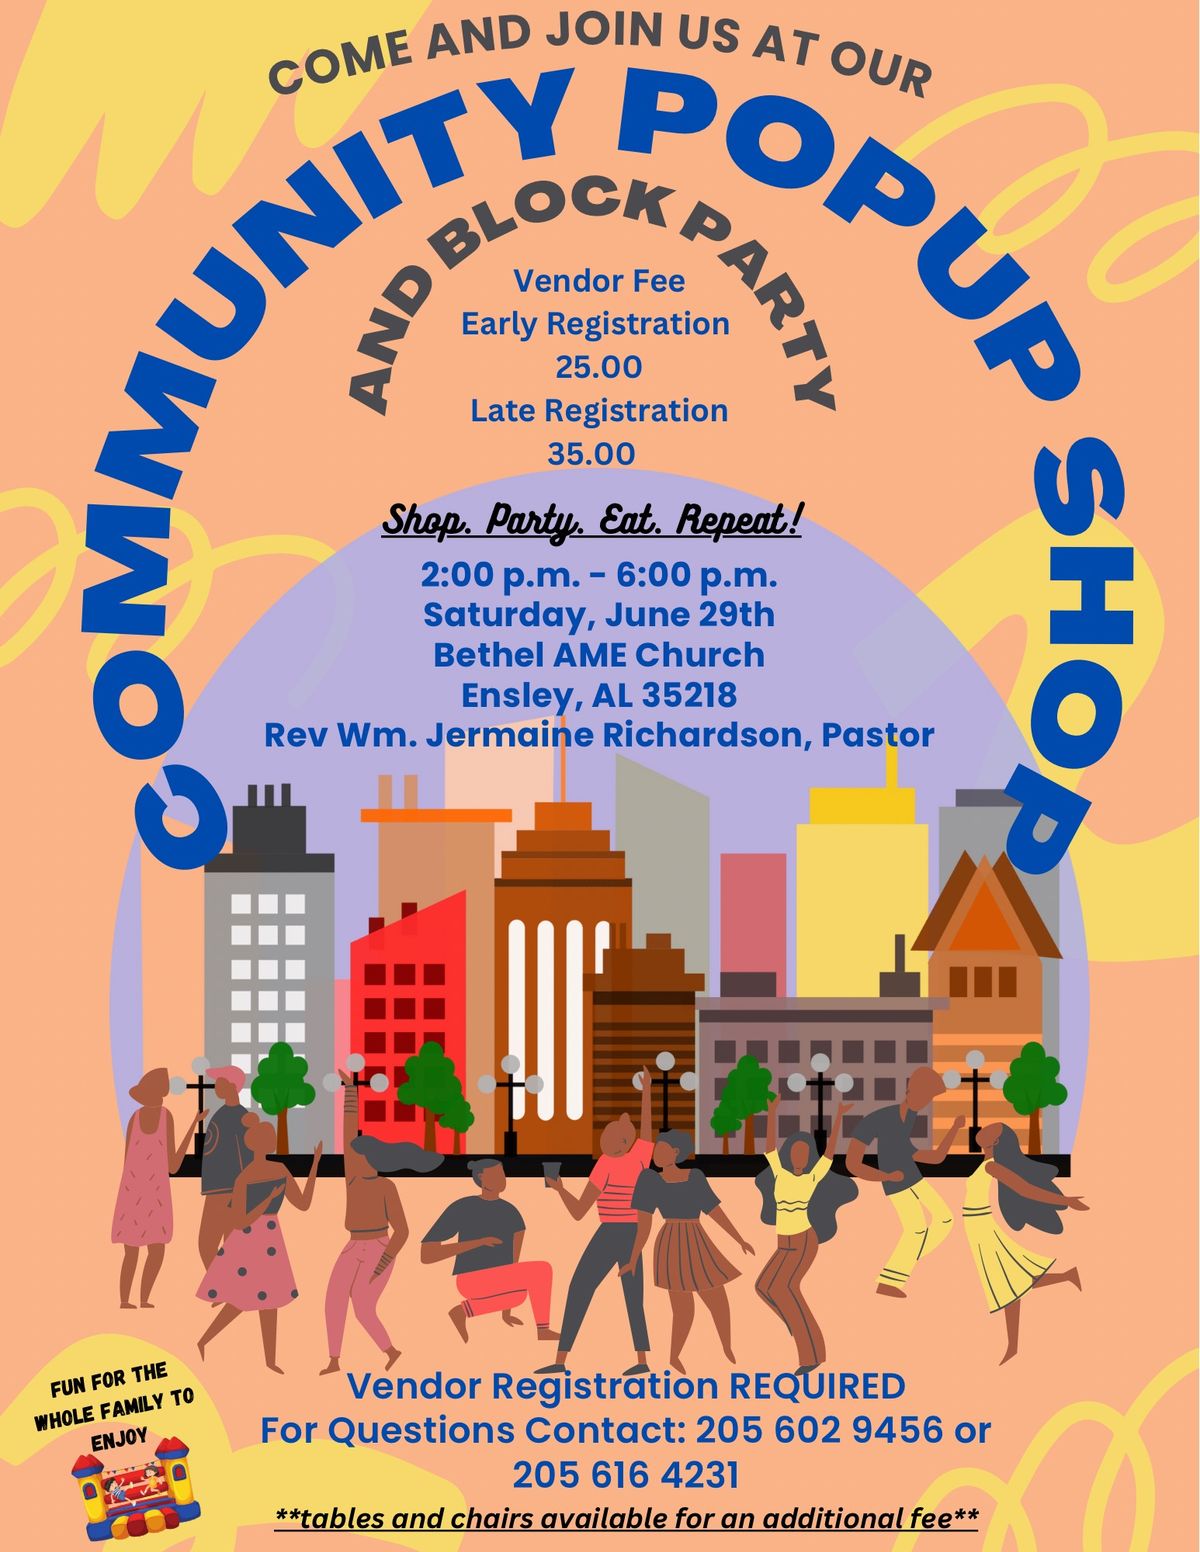 Community Pop Up Shop & Block Party